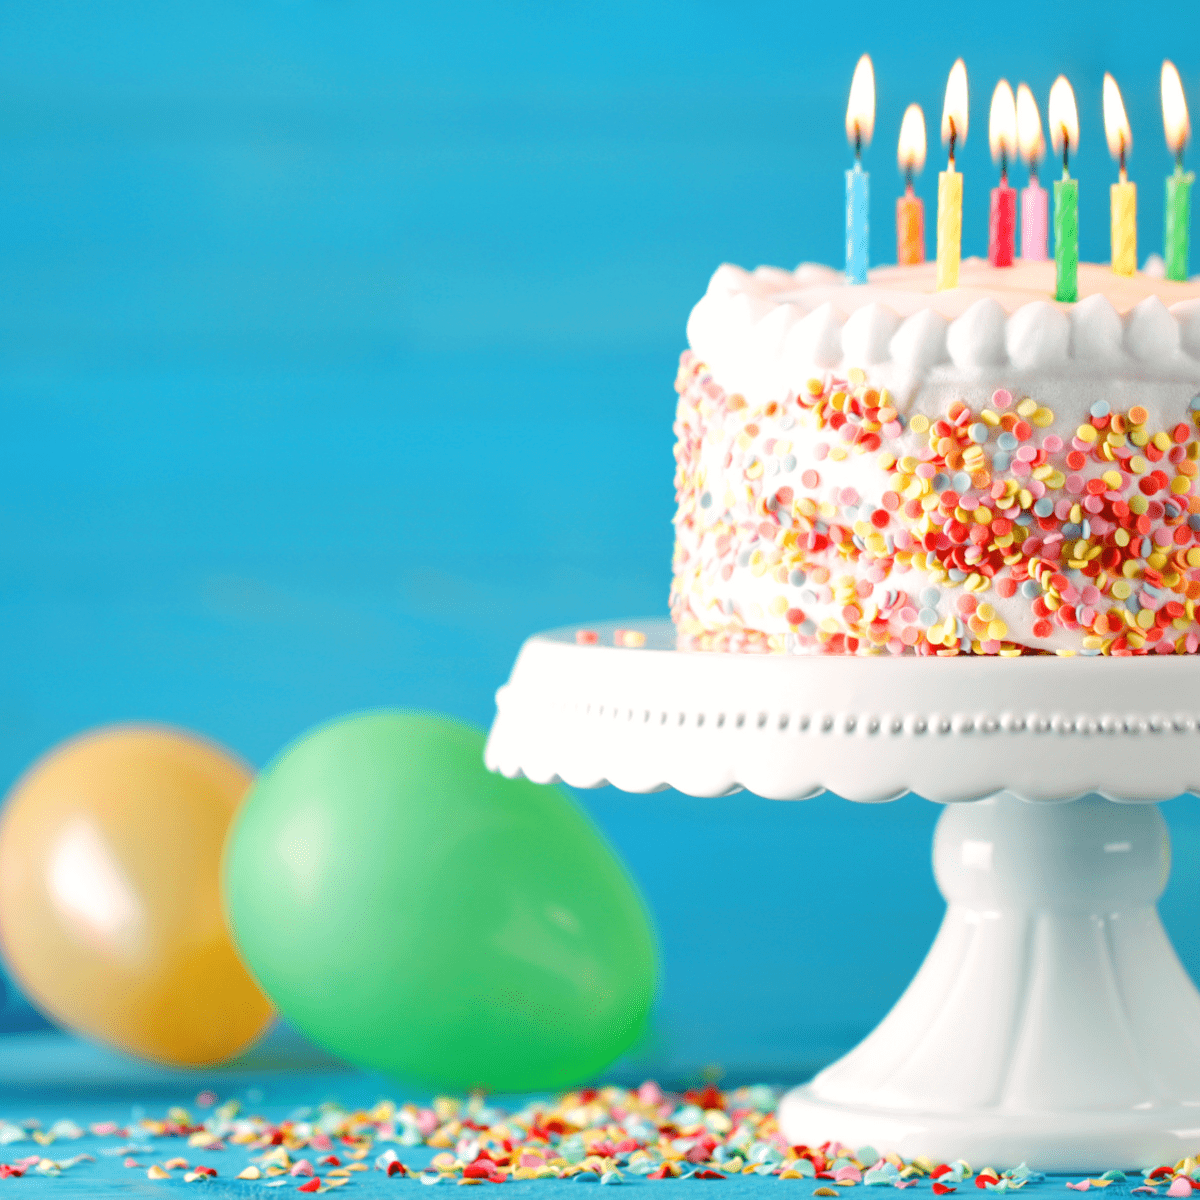 Shayari Happy Birthday Cakes Pics Gallery